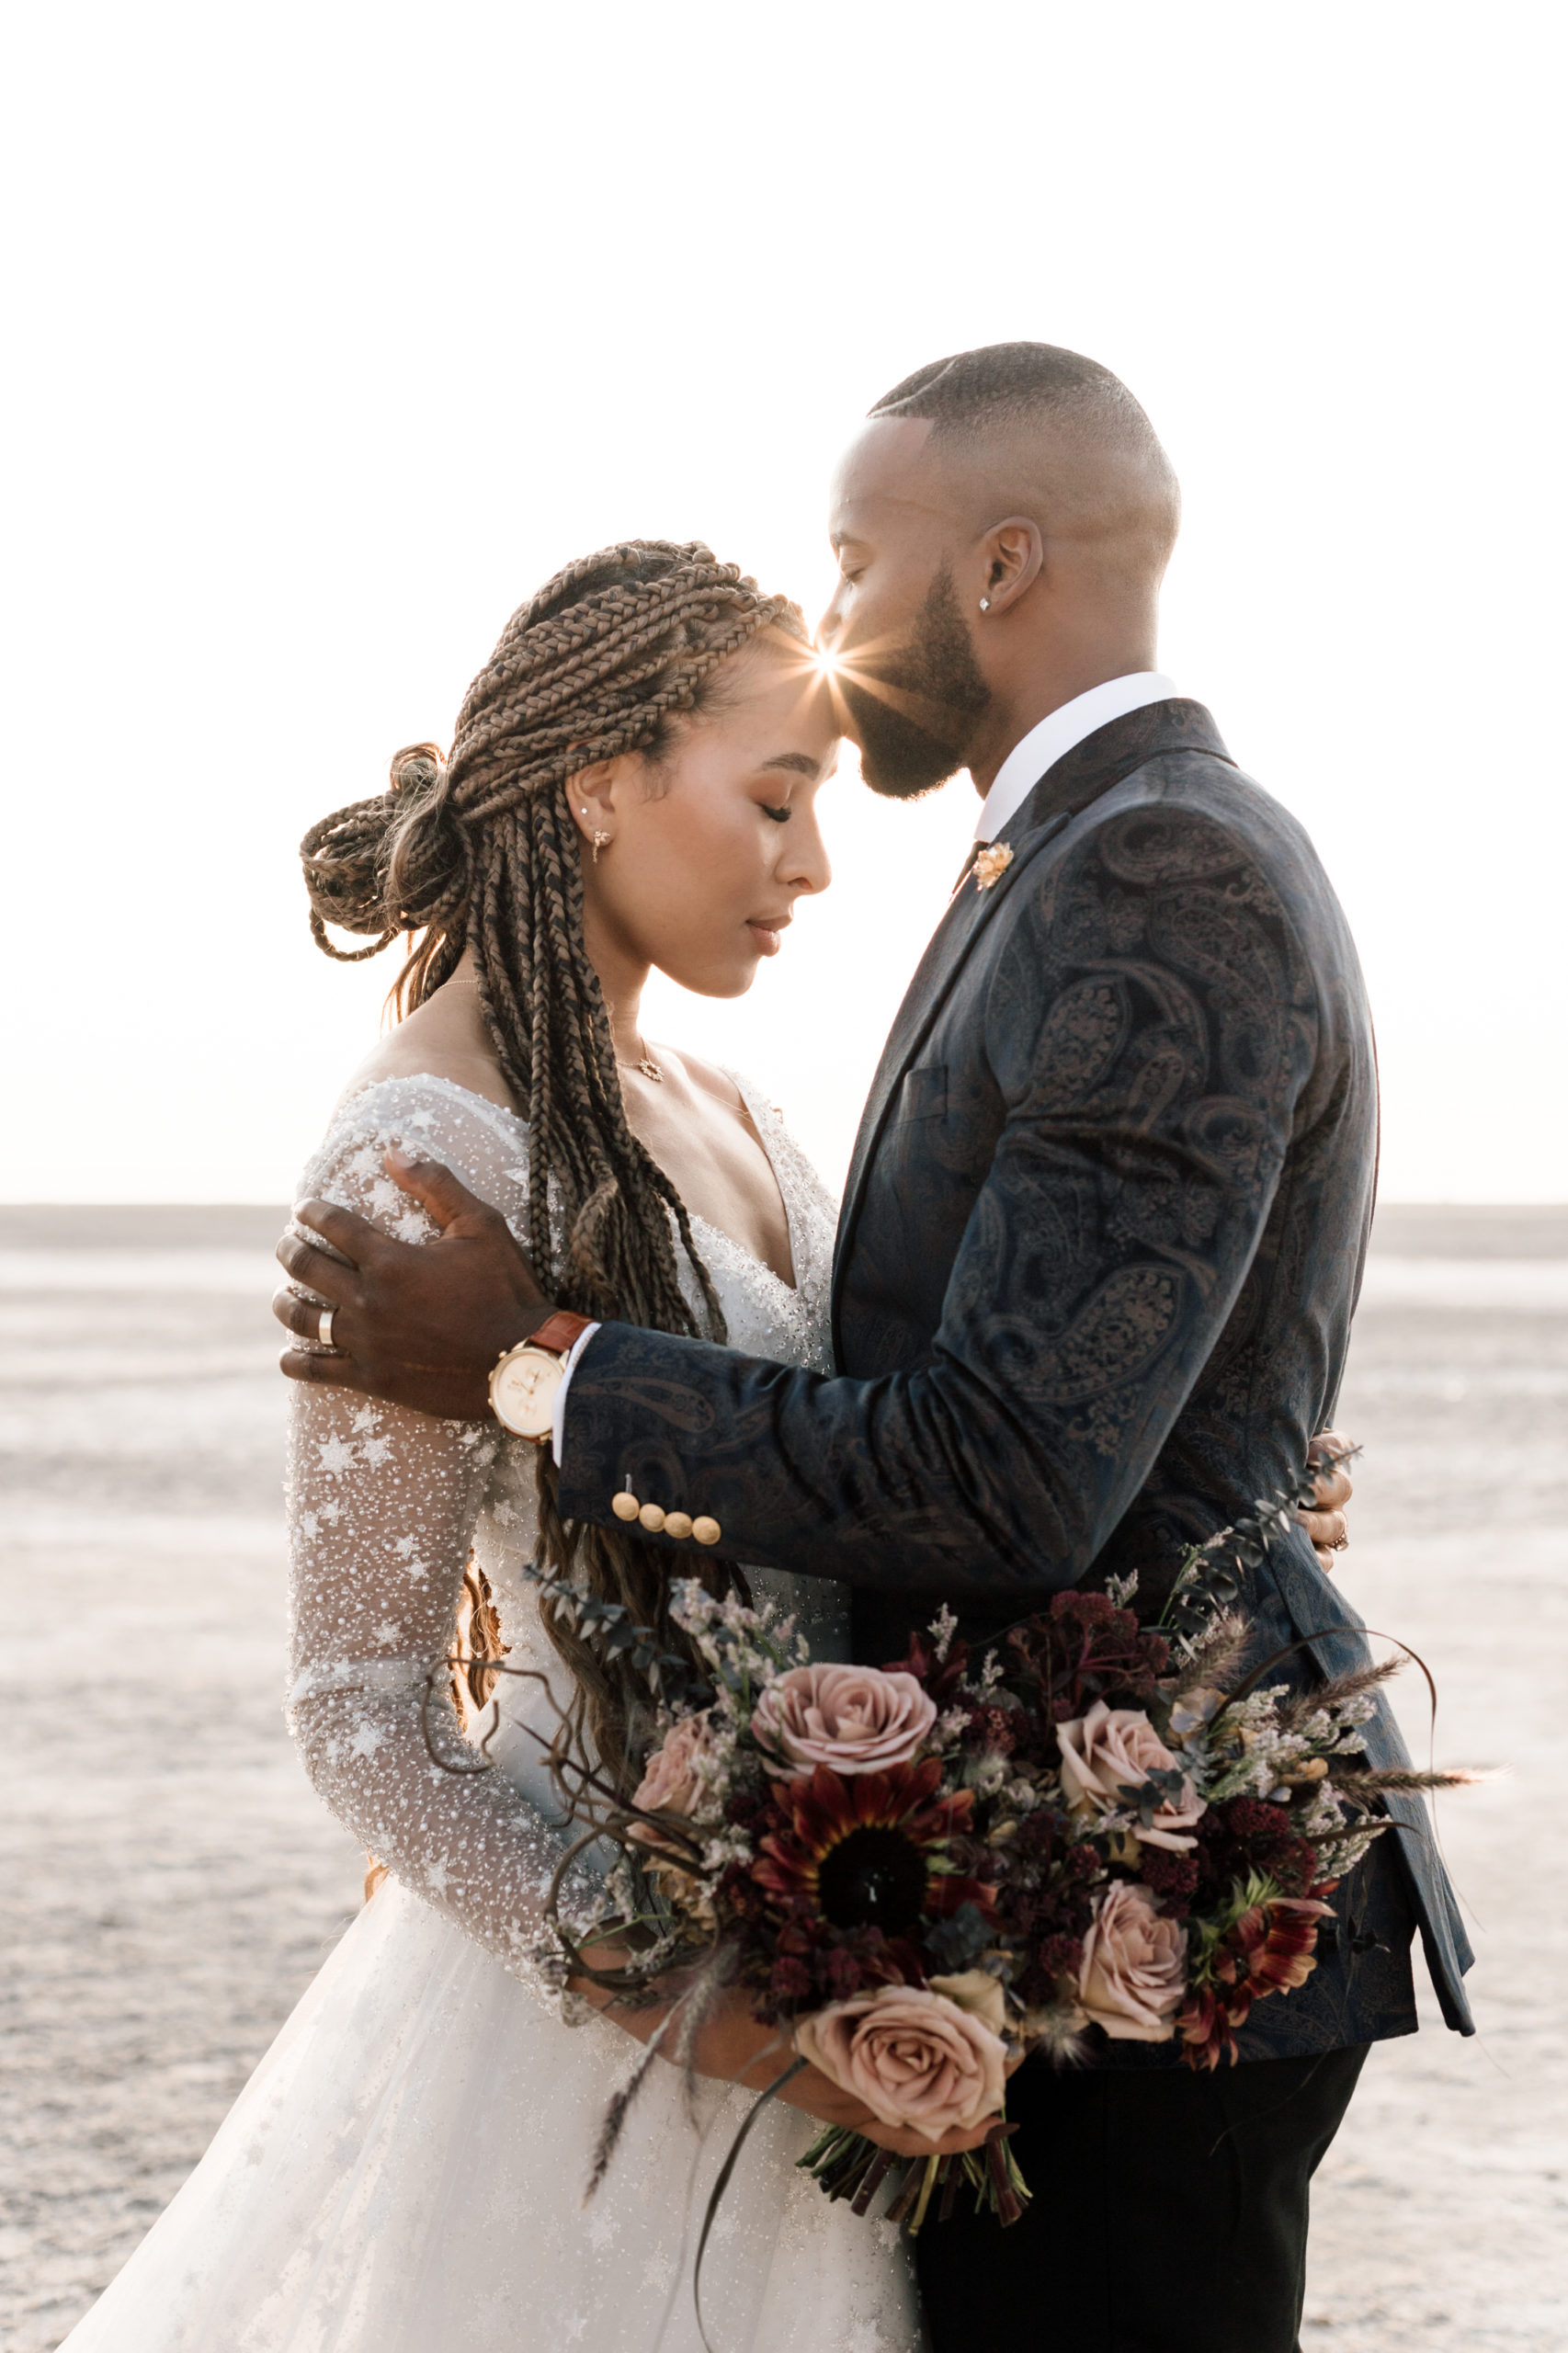 Groom wearing velvet suit kissing bride wearing boho mesh wedding dress on her forehead during their golden hour elopement at the Bonneville Salt Flats in Utah.